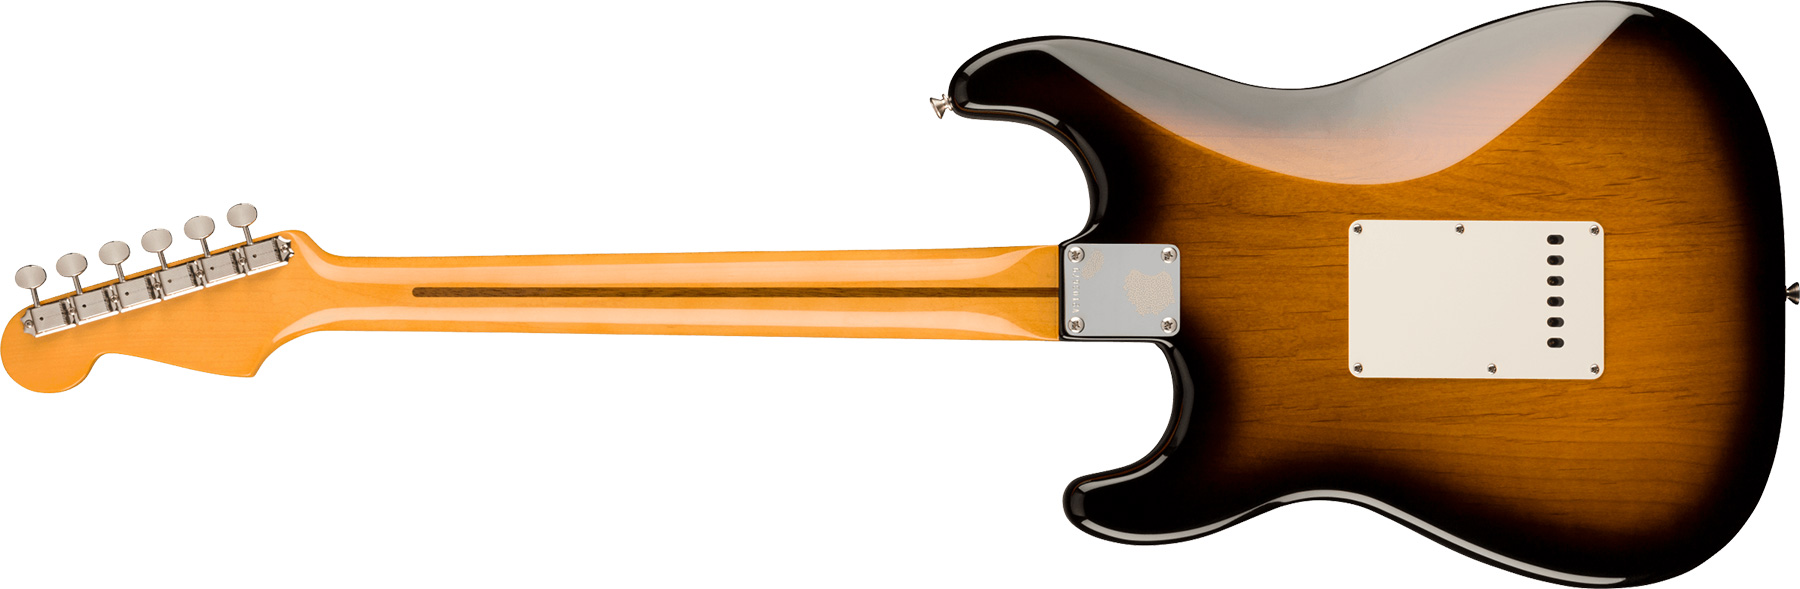 Fender Strat 1957 American Vintage Ii Usa 3s Trem Mn - 2-color Sunburst - Elektrische gitaar in Str-vorm - Variation 1